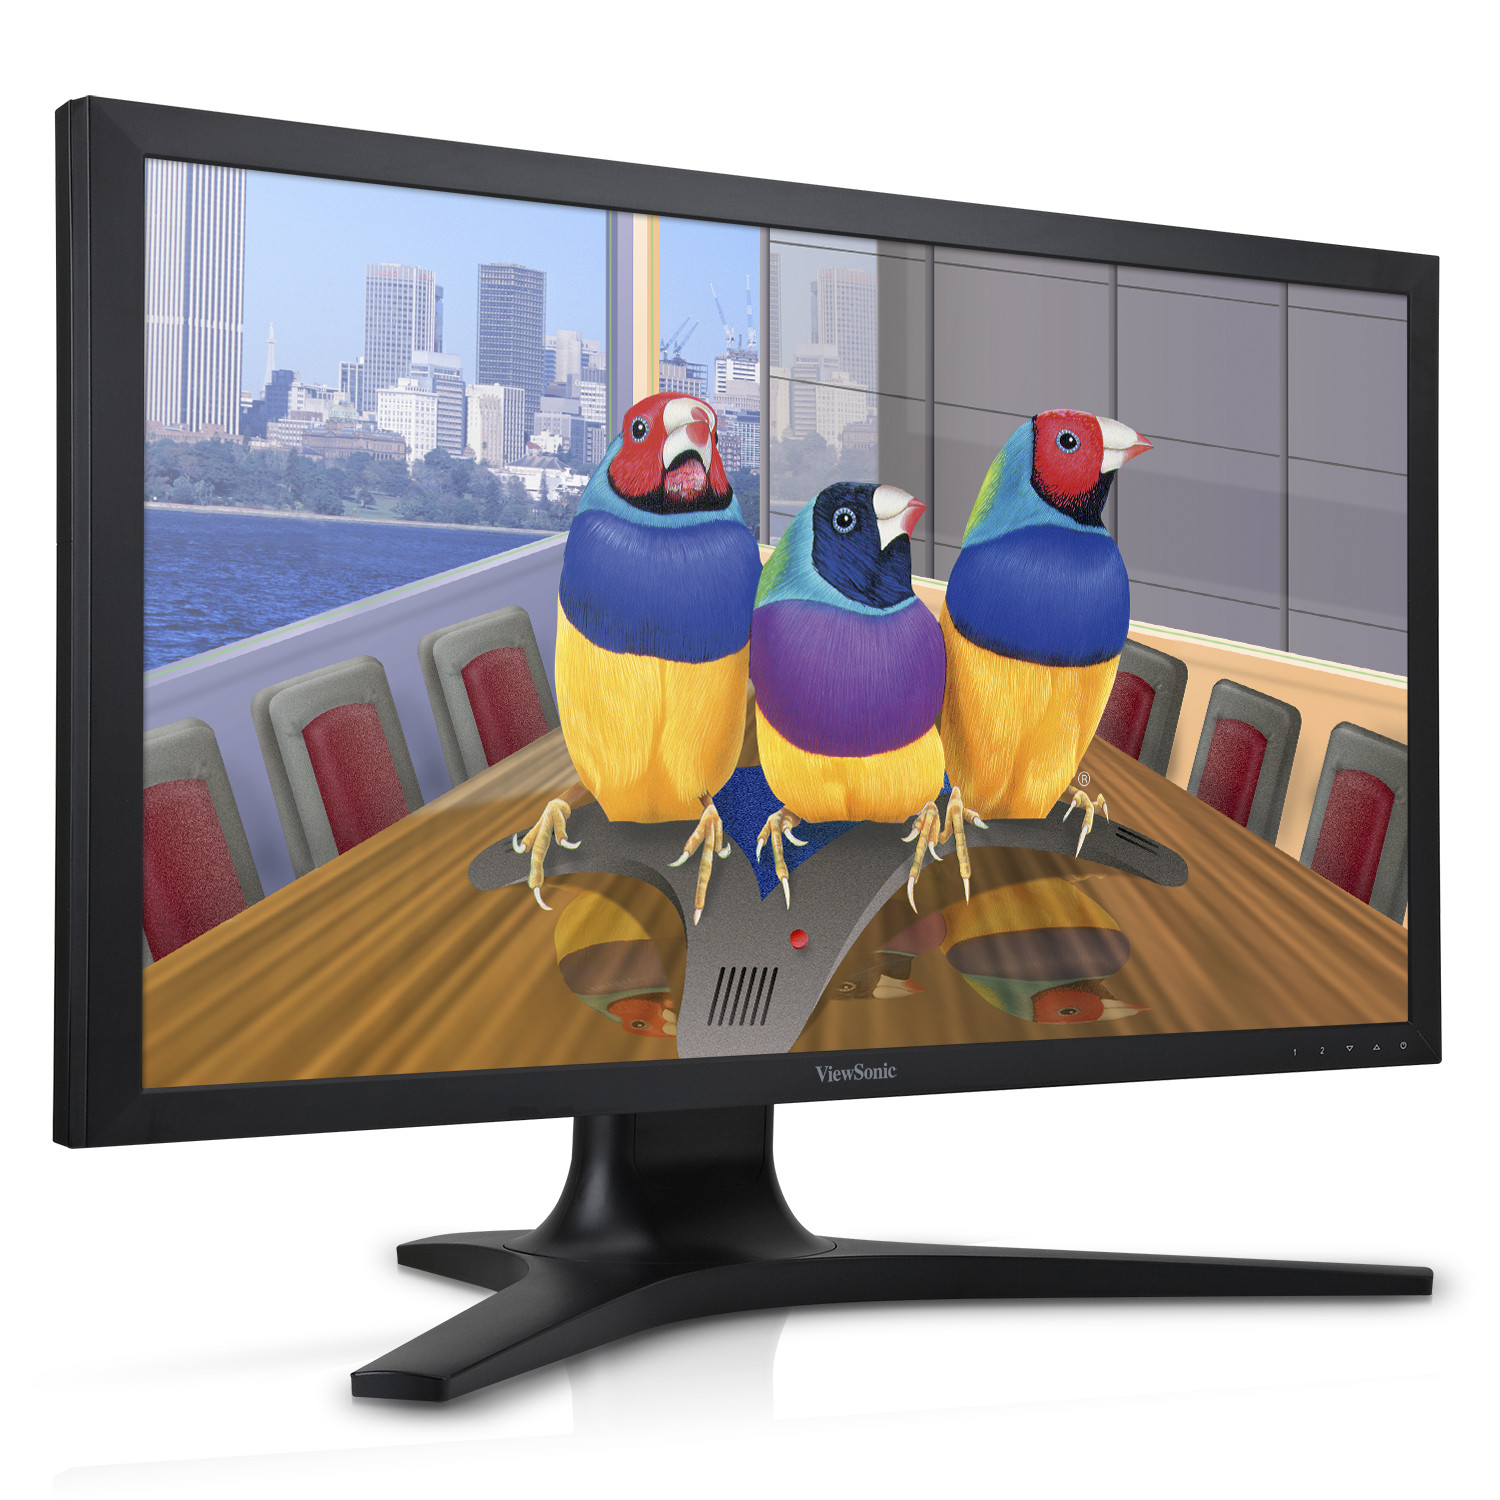 Νέα Ultra HD monitors από την ViewSonic